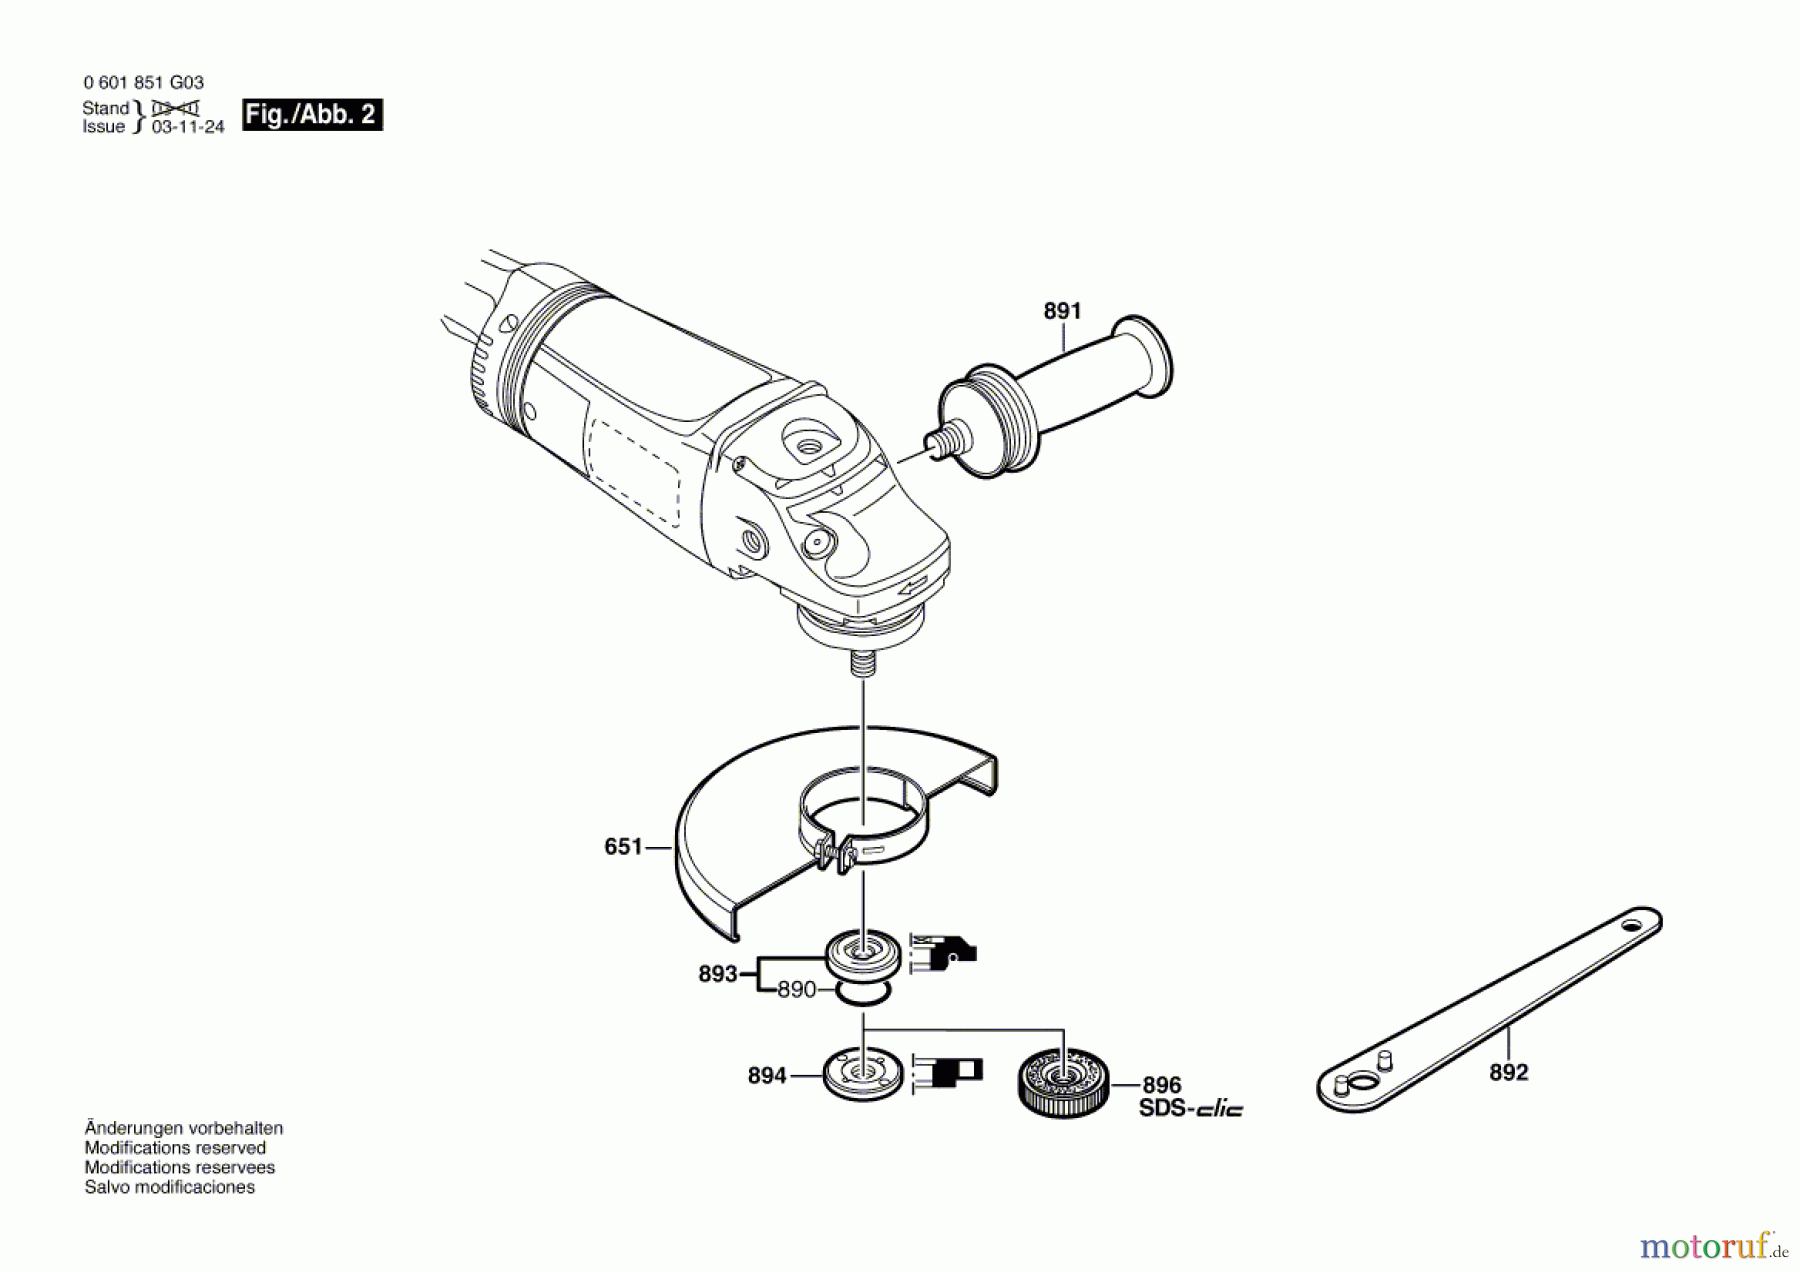  Bosch Werkzeug Winkelschleifer GWS 21-180 JHV Seite 2